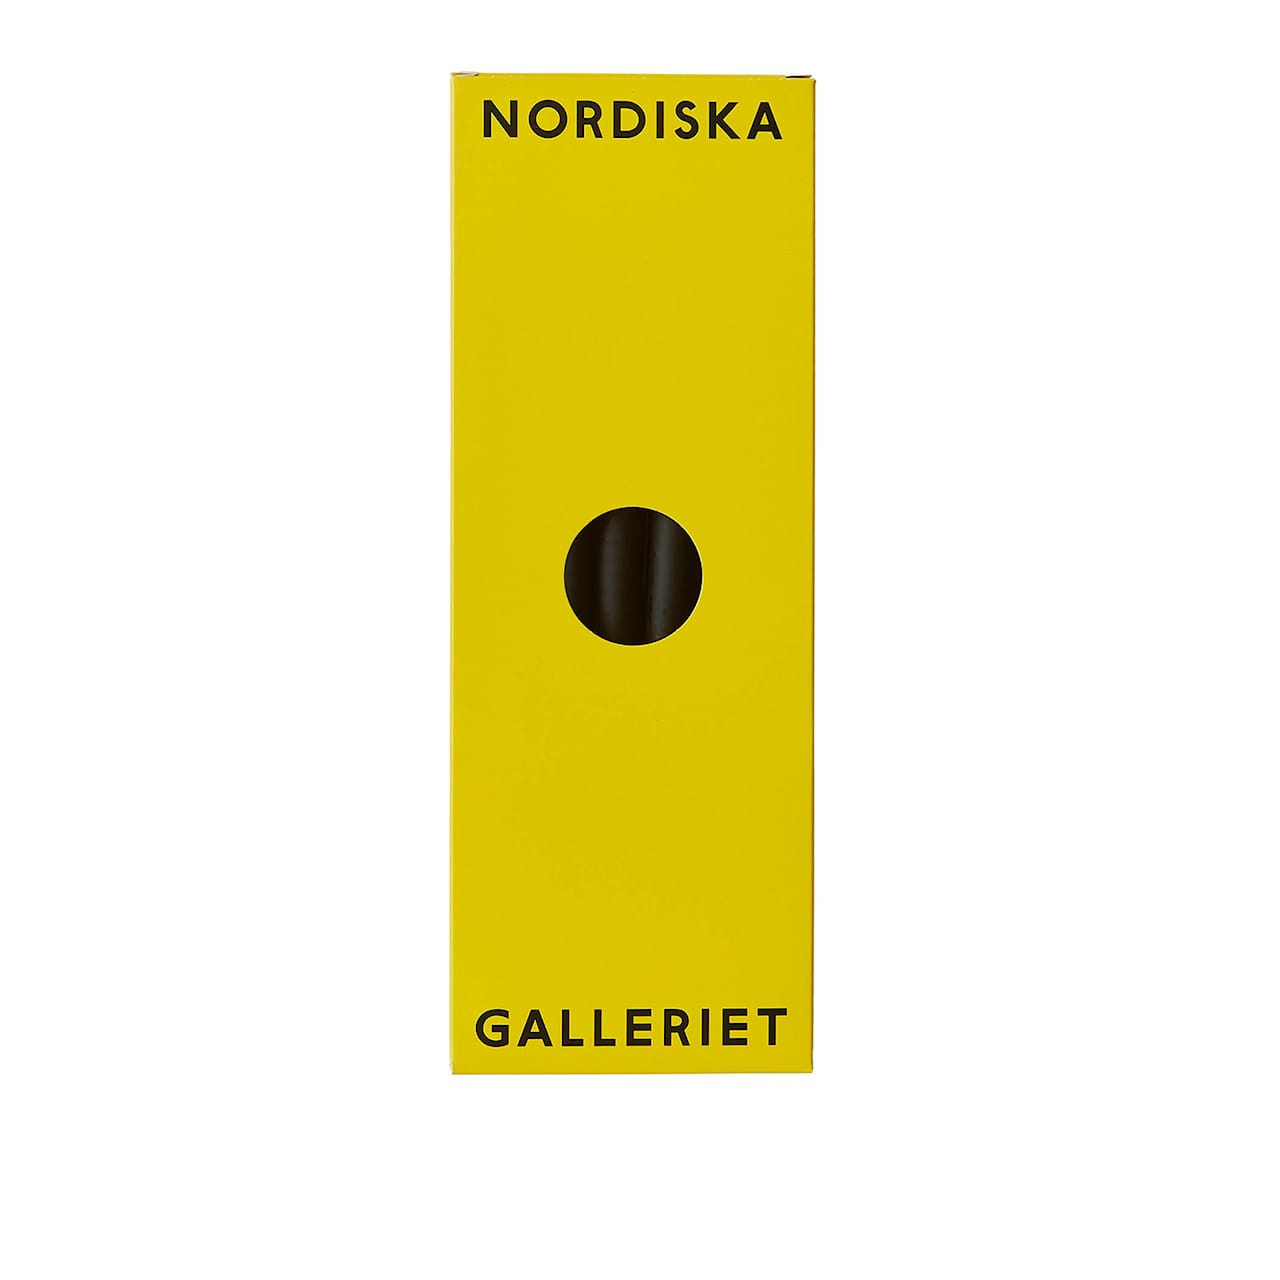 Nordiska Galleriet Candles Pack of 6 - Black